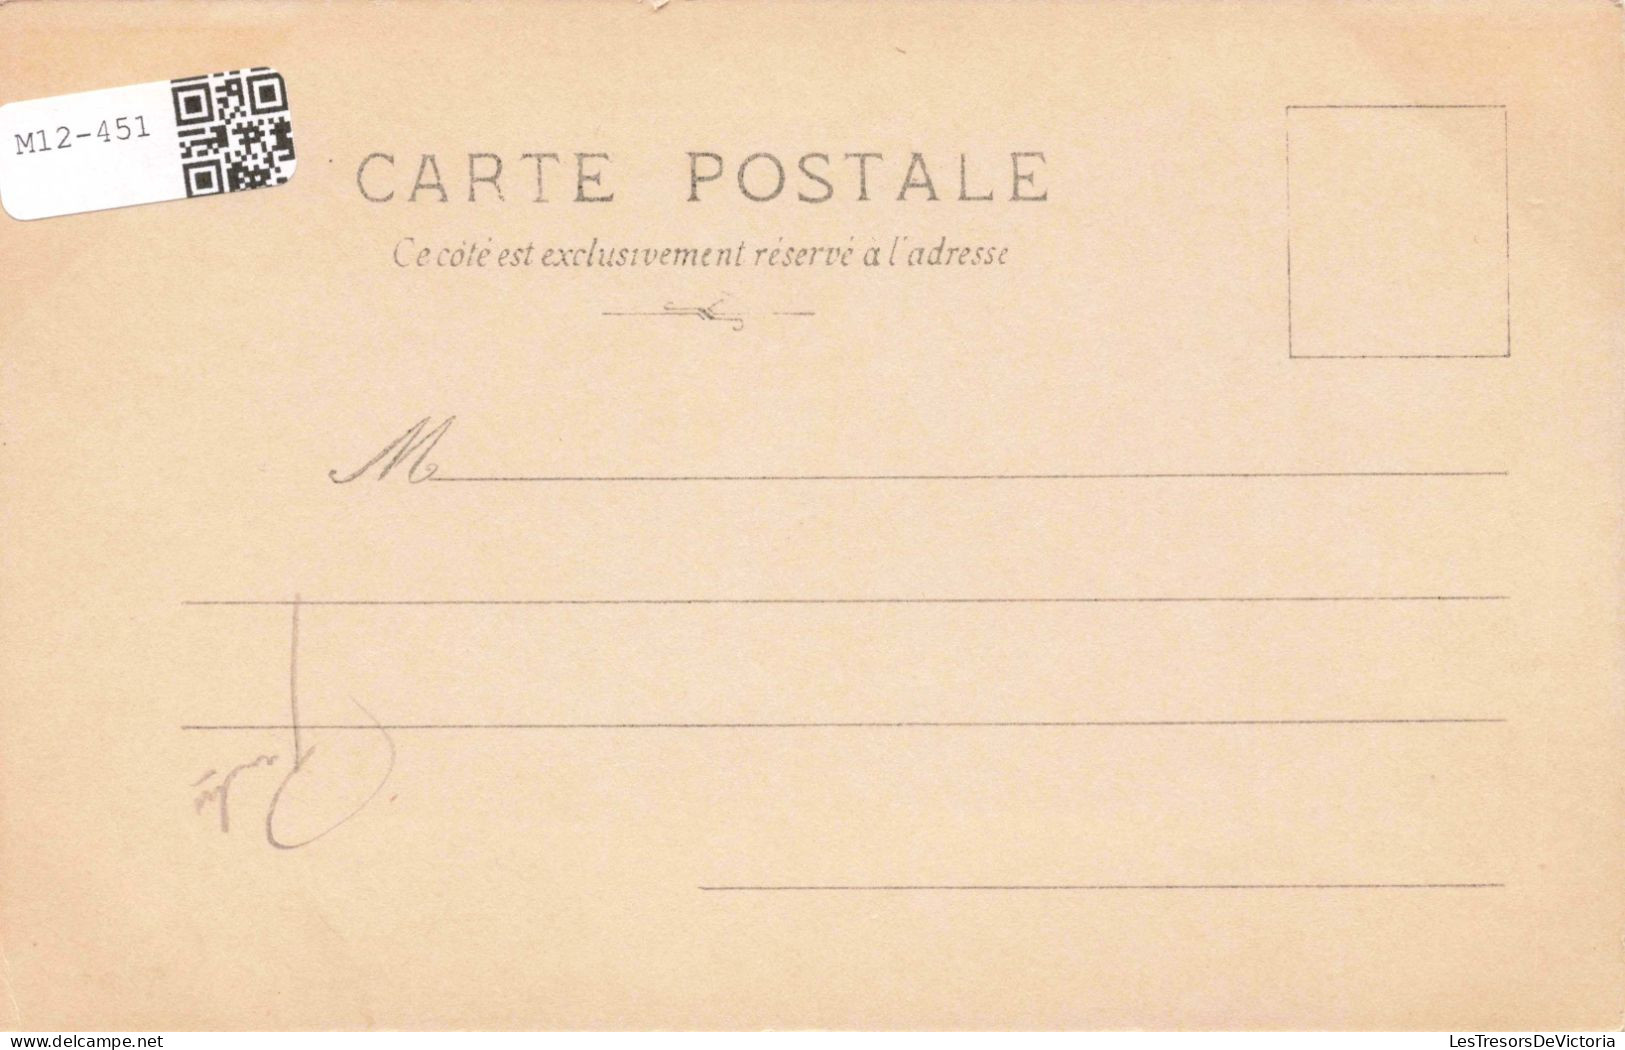 HISTOIRE - MN Ponce Camus - Napoléon A Osterode Accorde Des Grâces Aux Habitants - Carte Postale Ancienne - History